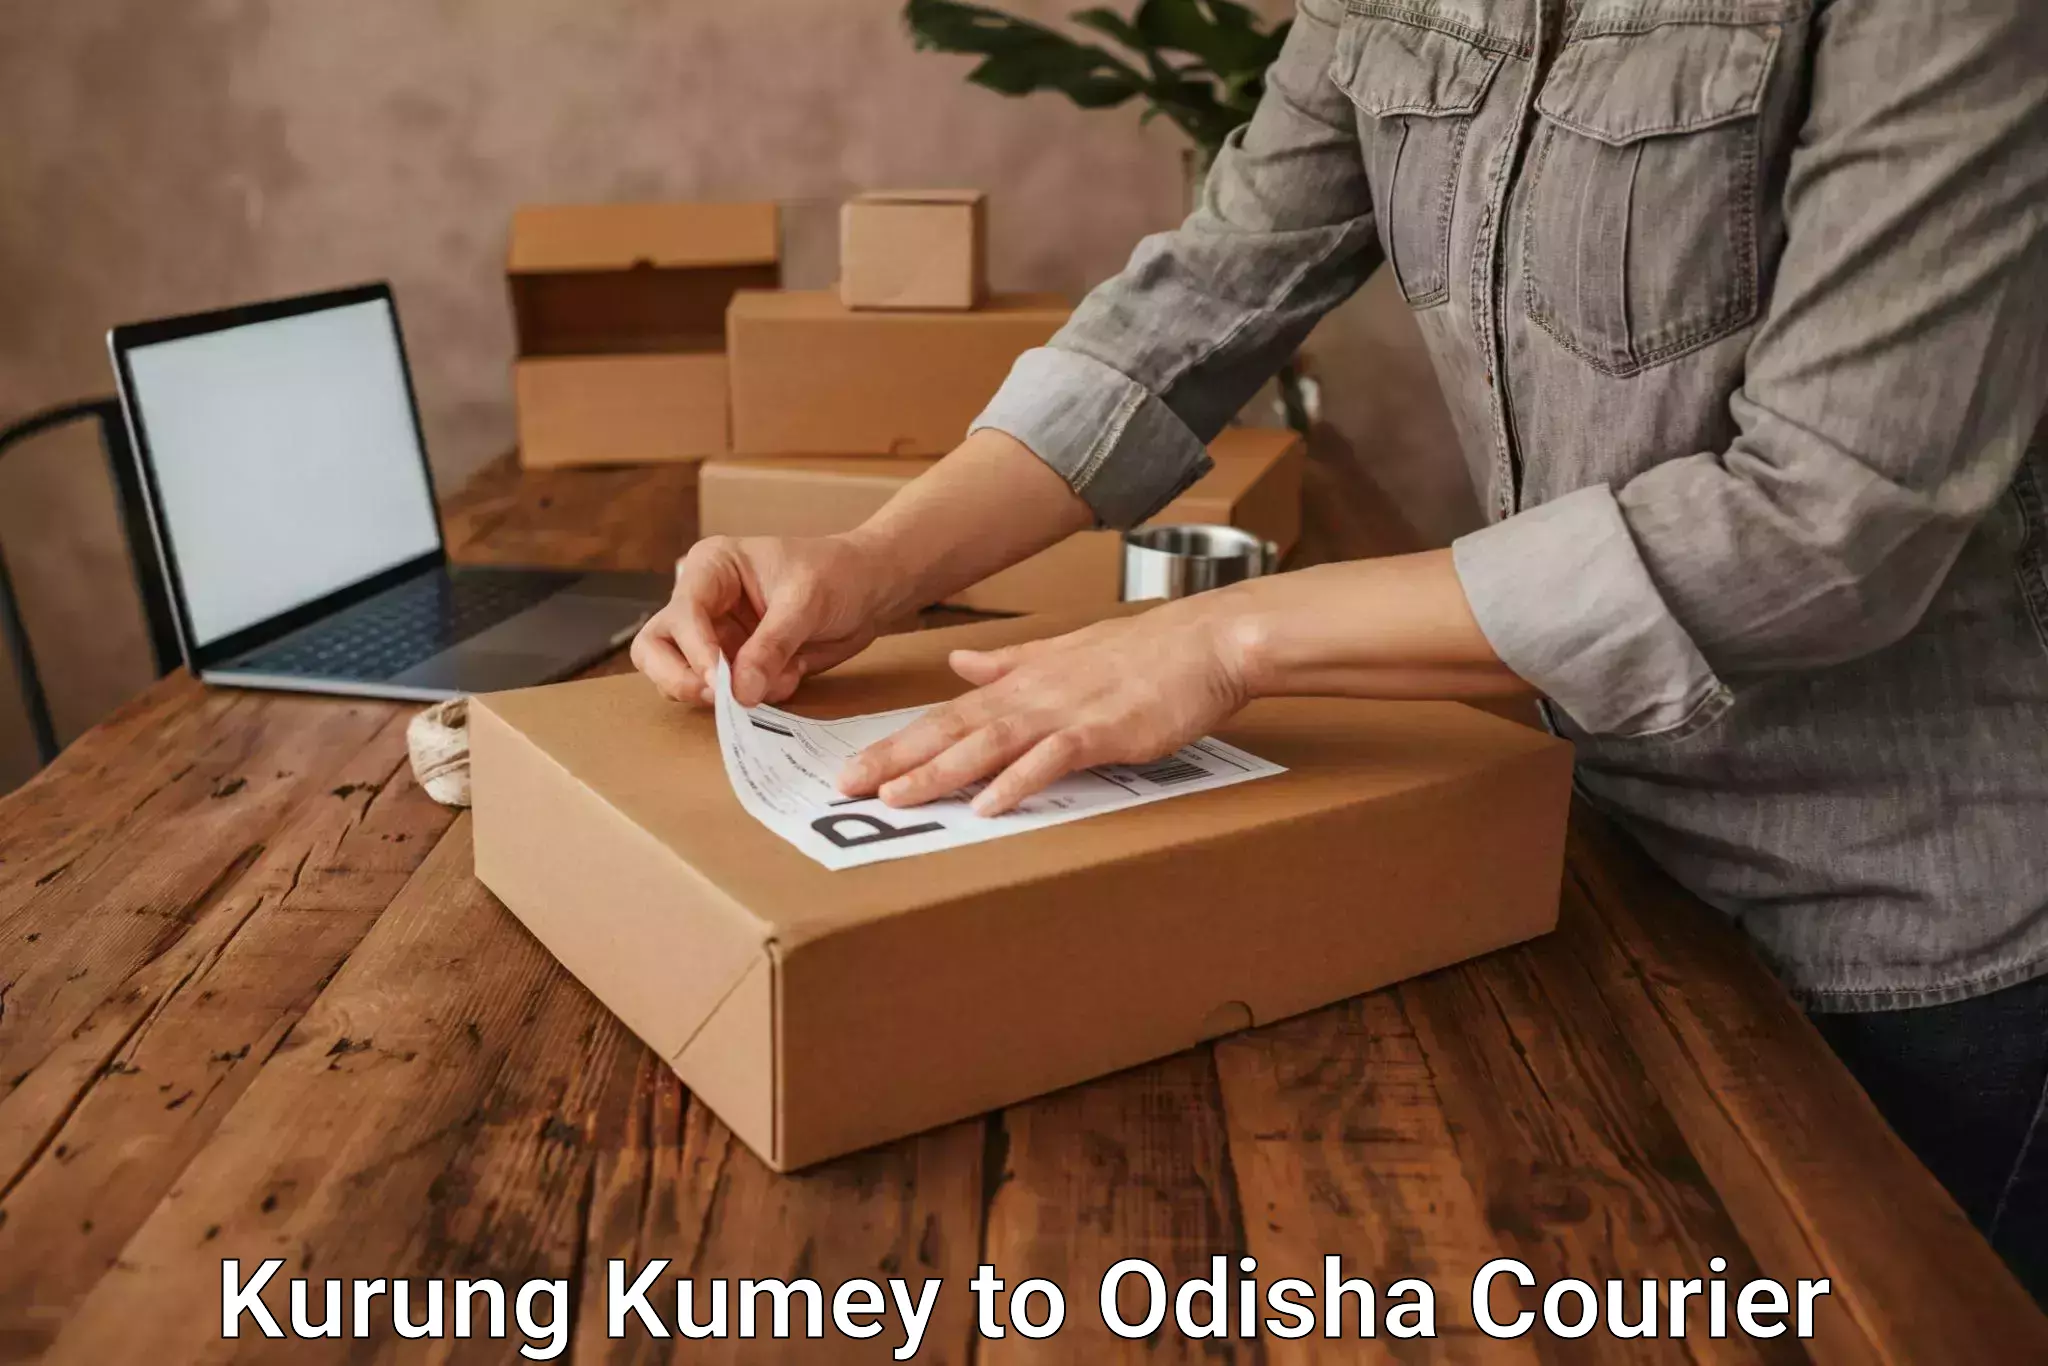 Premium courier solutions Kurung Kumey to Dhenkanal